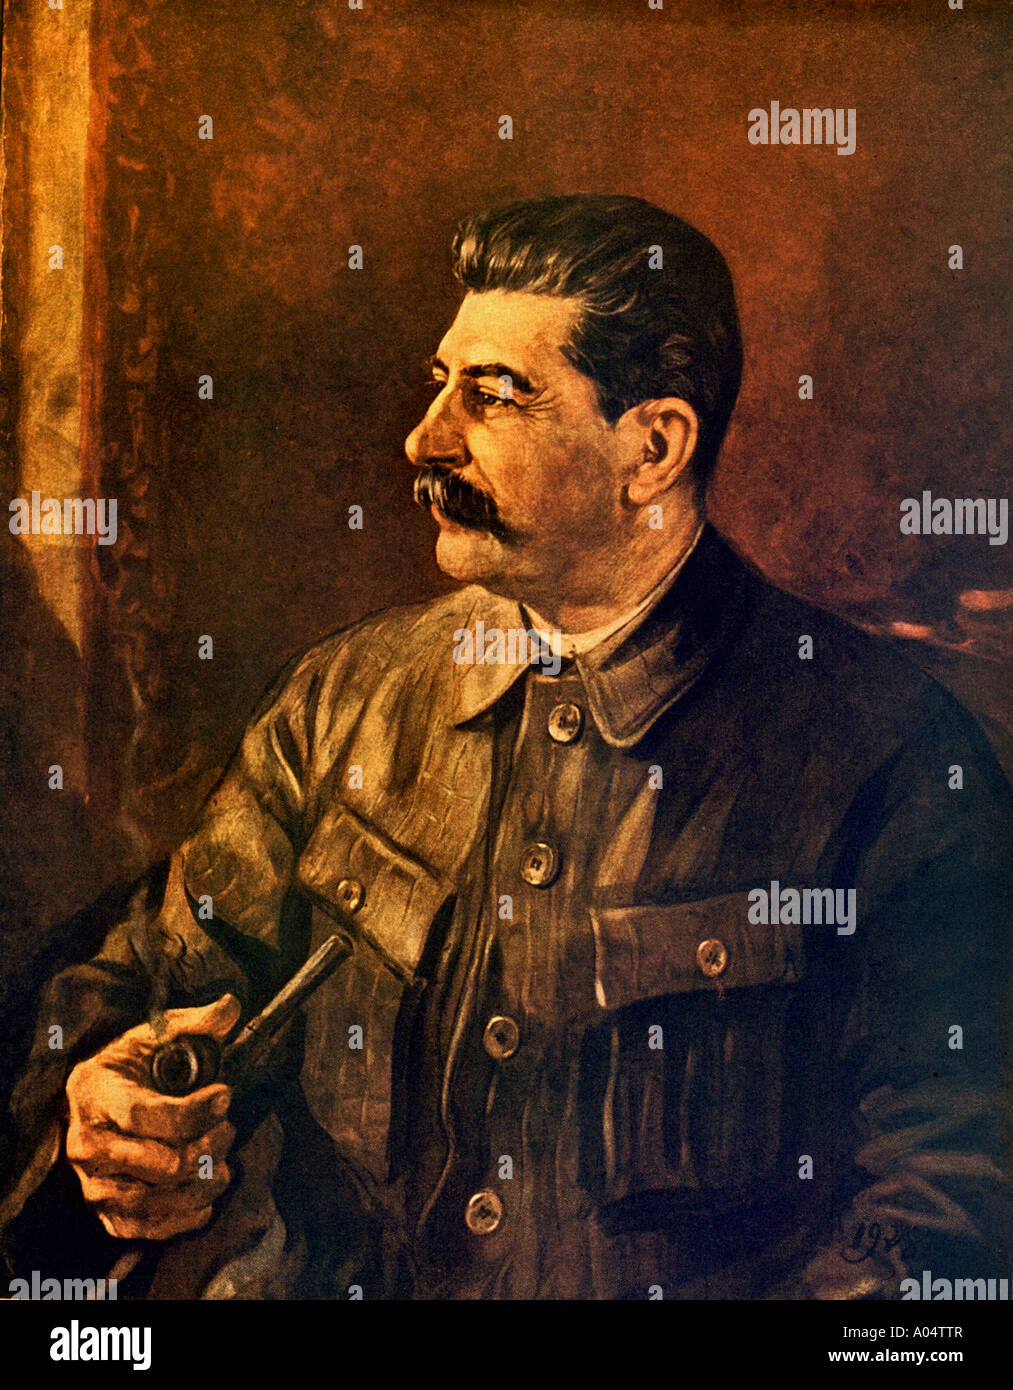 JOSEPH STALIN rivoluzionario sovietico e leader in un dipinto del 1944 Foto Stock